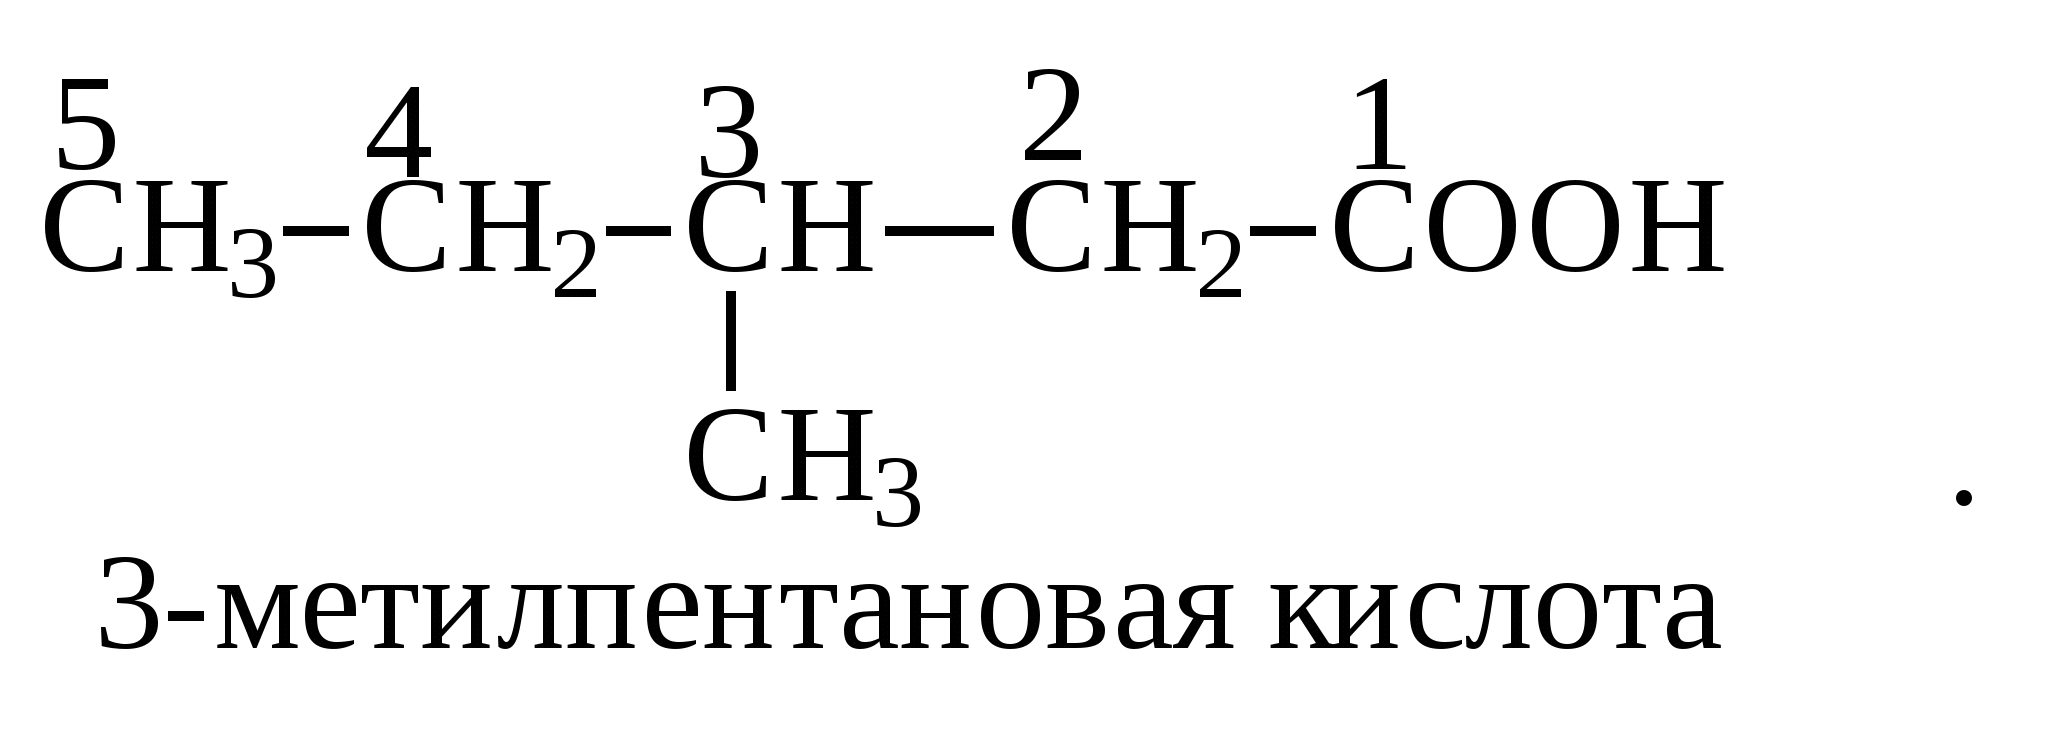 3 Метил пентановая кислота формула. 2 Метилпентановая кислота формула. 2-Амино-3-метилпентановой кислоты. 3 Амино 4 метилпентановая кислота. Диметилгептановая кислота формула